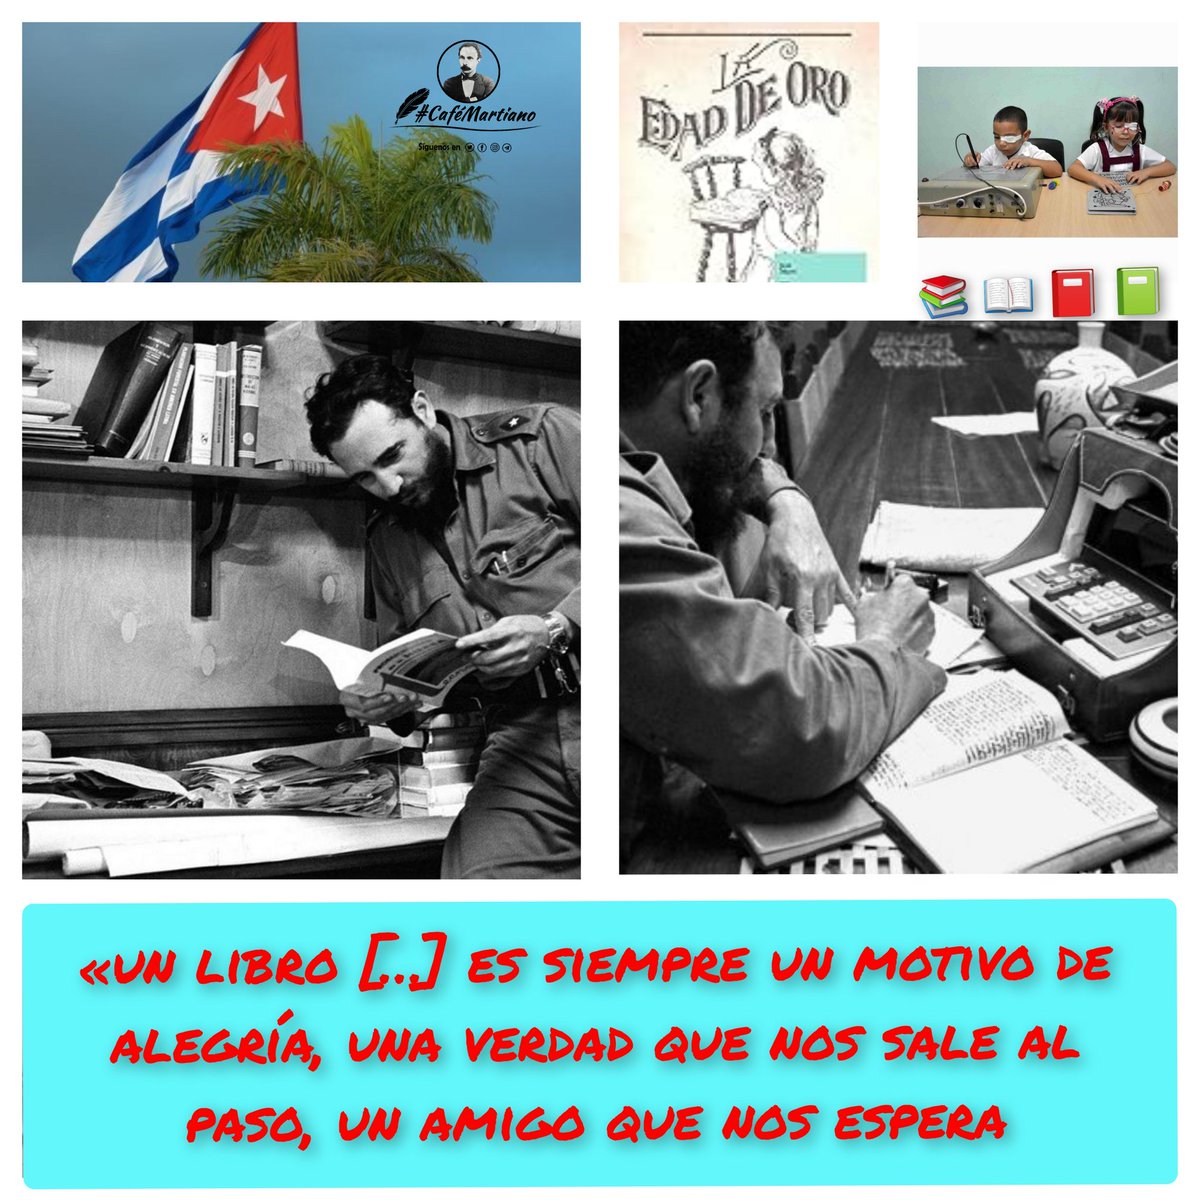 Buenos días 🇨🇺 #CaféMartiano 'Leer es construir identidad' lema de la 32 Feria del Libro en La Habana, que comienza hoy 📖 ✍“Cada libro nuevo, es piedra nueva en el altar de nuestra raza”. 'Tenemos que rescatar el valor del libro y el amor a la lectura'. Fidel #Cuba